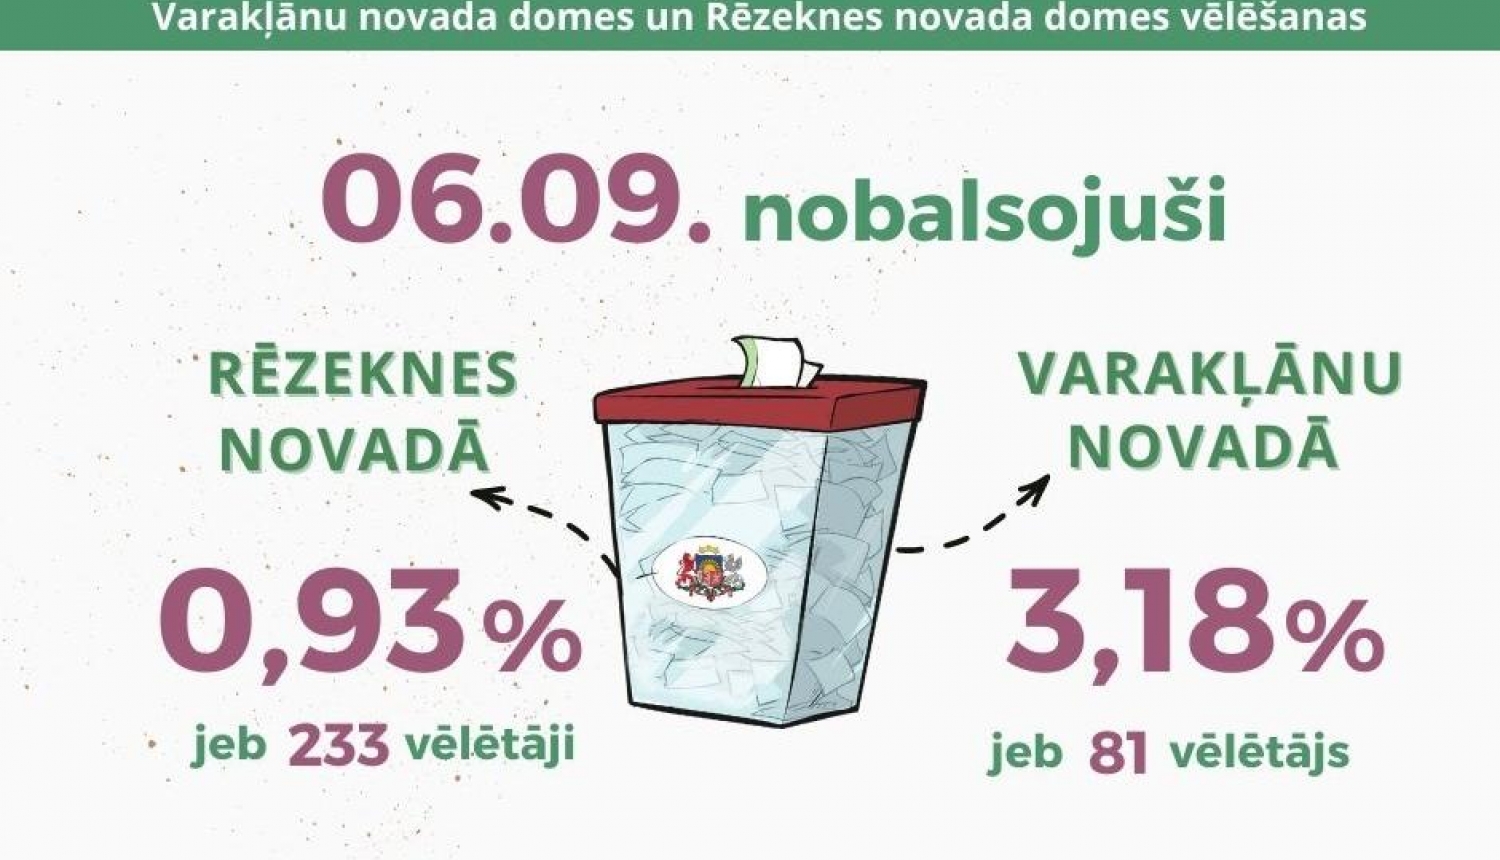 Pirmajā iepriekšējās balsošanas dienā Varakļānu novadā nobalsojuši 3,18% vēlētāju, Rēzeknes novadā – 0,93%